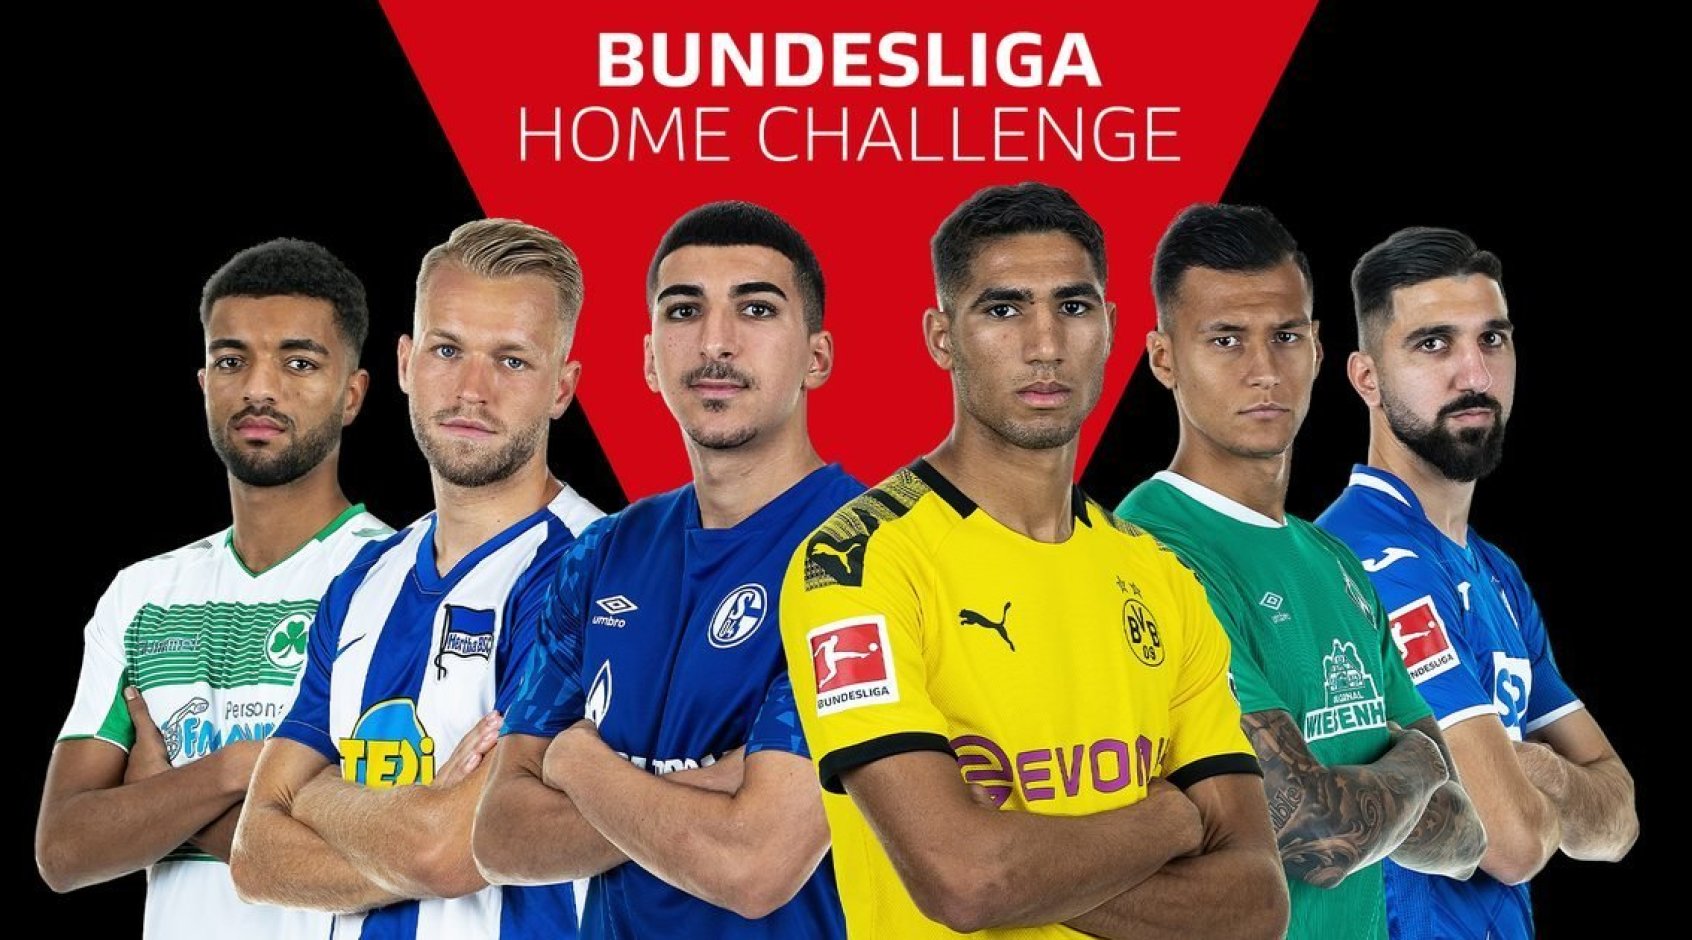 Киберфутбол. FIFA 20. Бундеслига. #BundesligaHomeChallenge. 4-я игровая неделя. Результаты матчей субботы